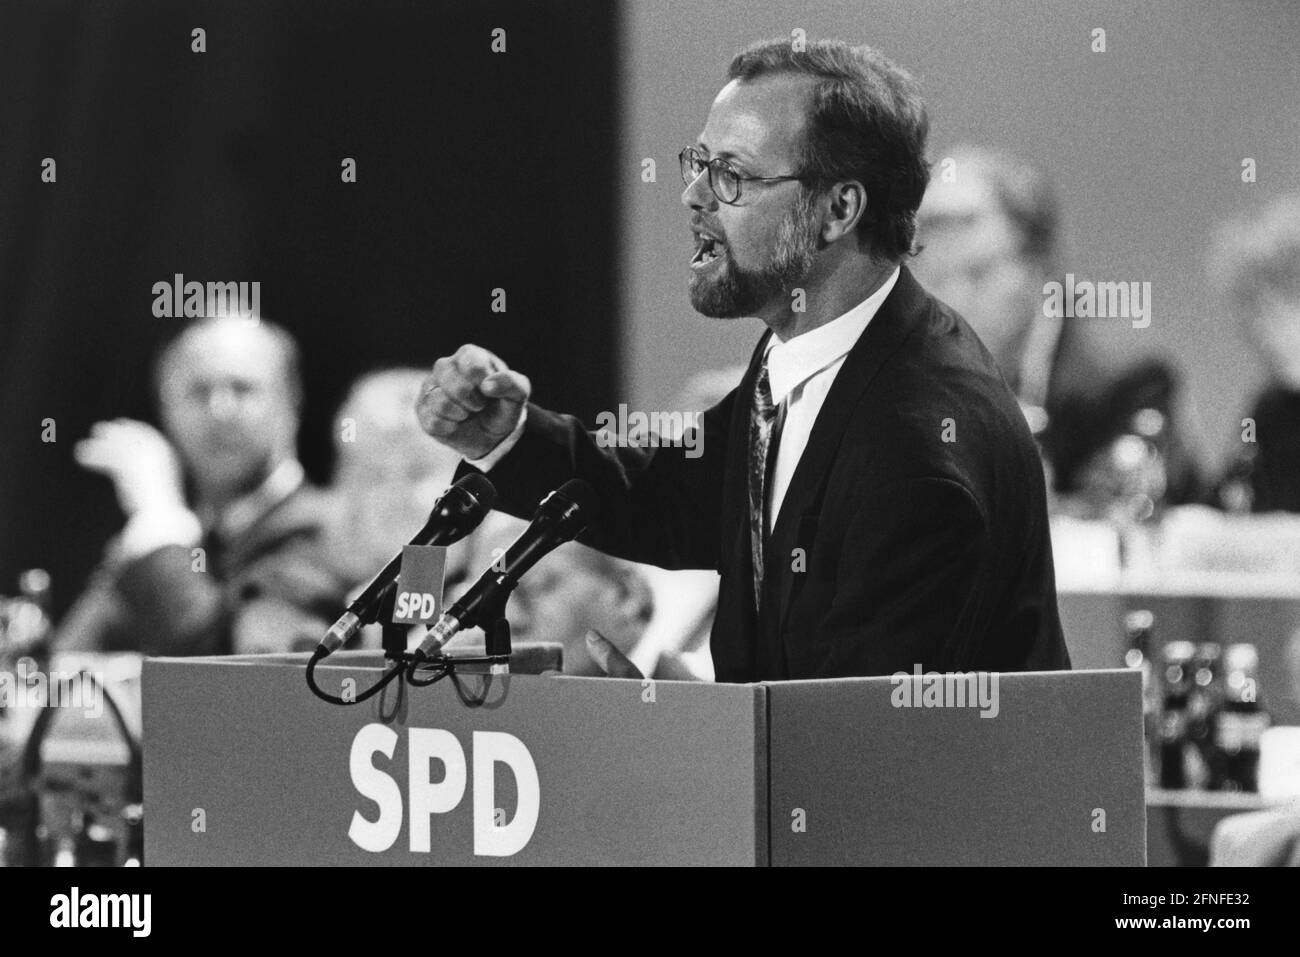 Rudolf Scharping, presidente del SPD, durante su discurso en la conferencia especial del SPD en la sala de exposiciones Gruga de Essen. [traducción automática] Foto de stock